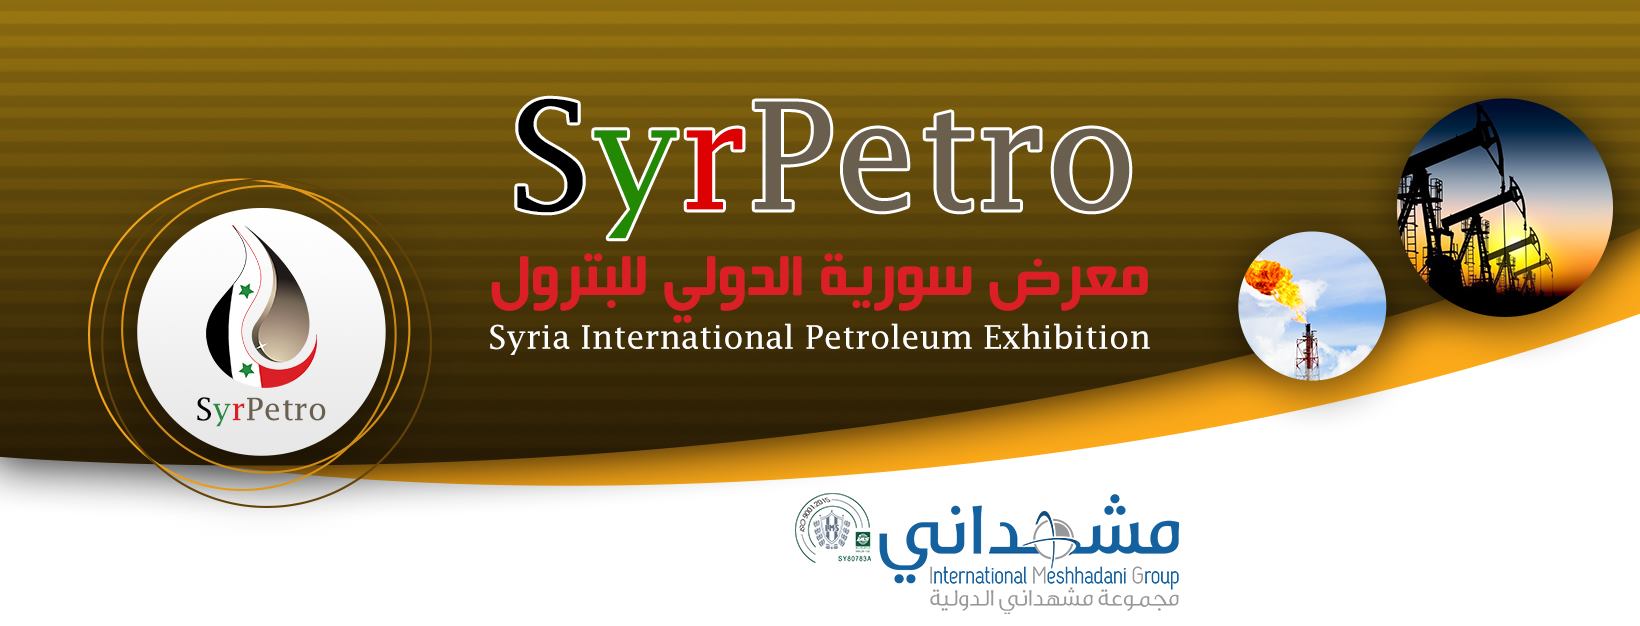 أكثر من 50 جهة تتحضّر للمشاركة في معرض سورية الدولي للبترول والثروة المعدنية " سيربترو Syr Petro" (فيديو)